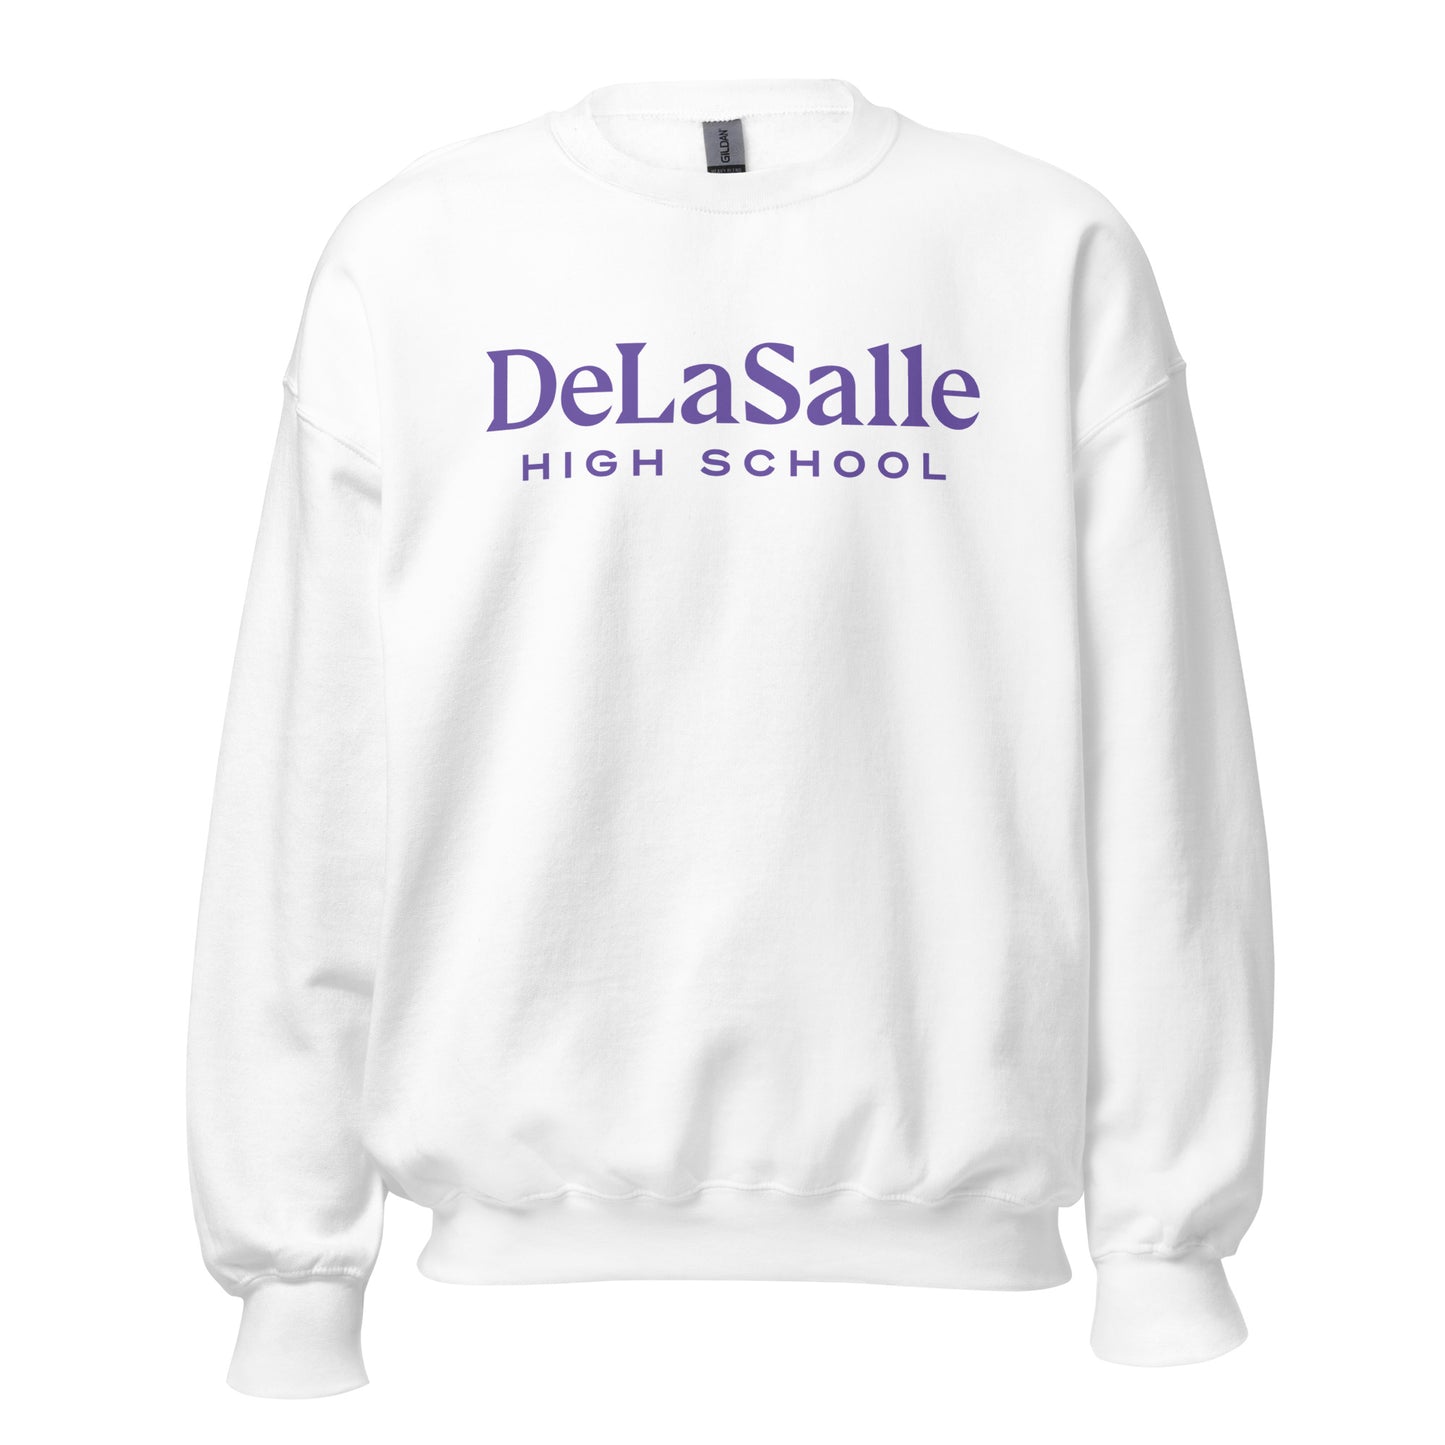 DeLaSalle High School Sweatshirt